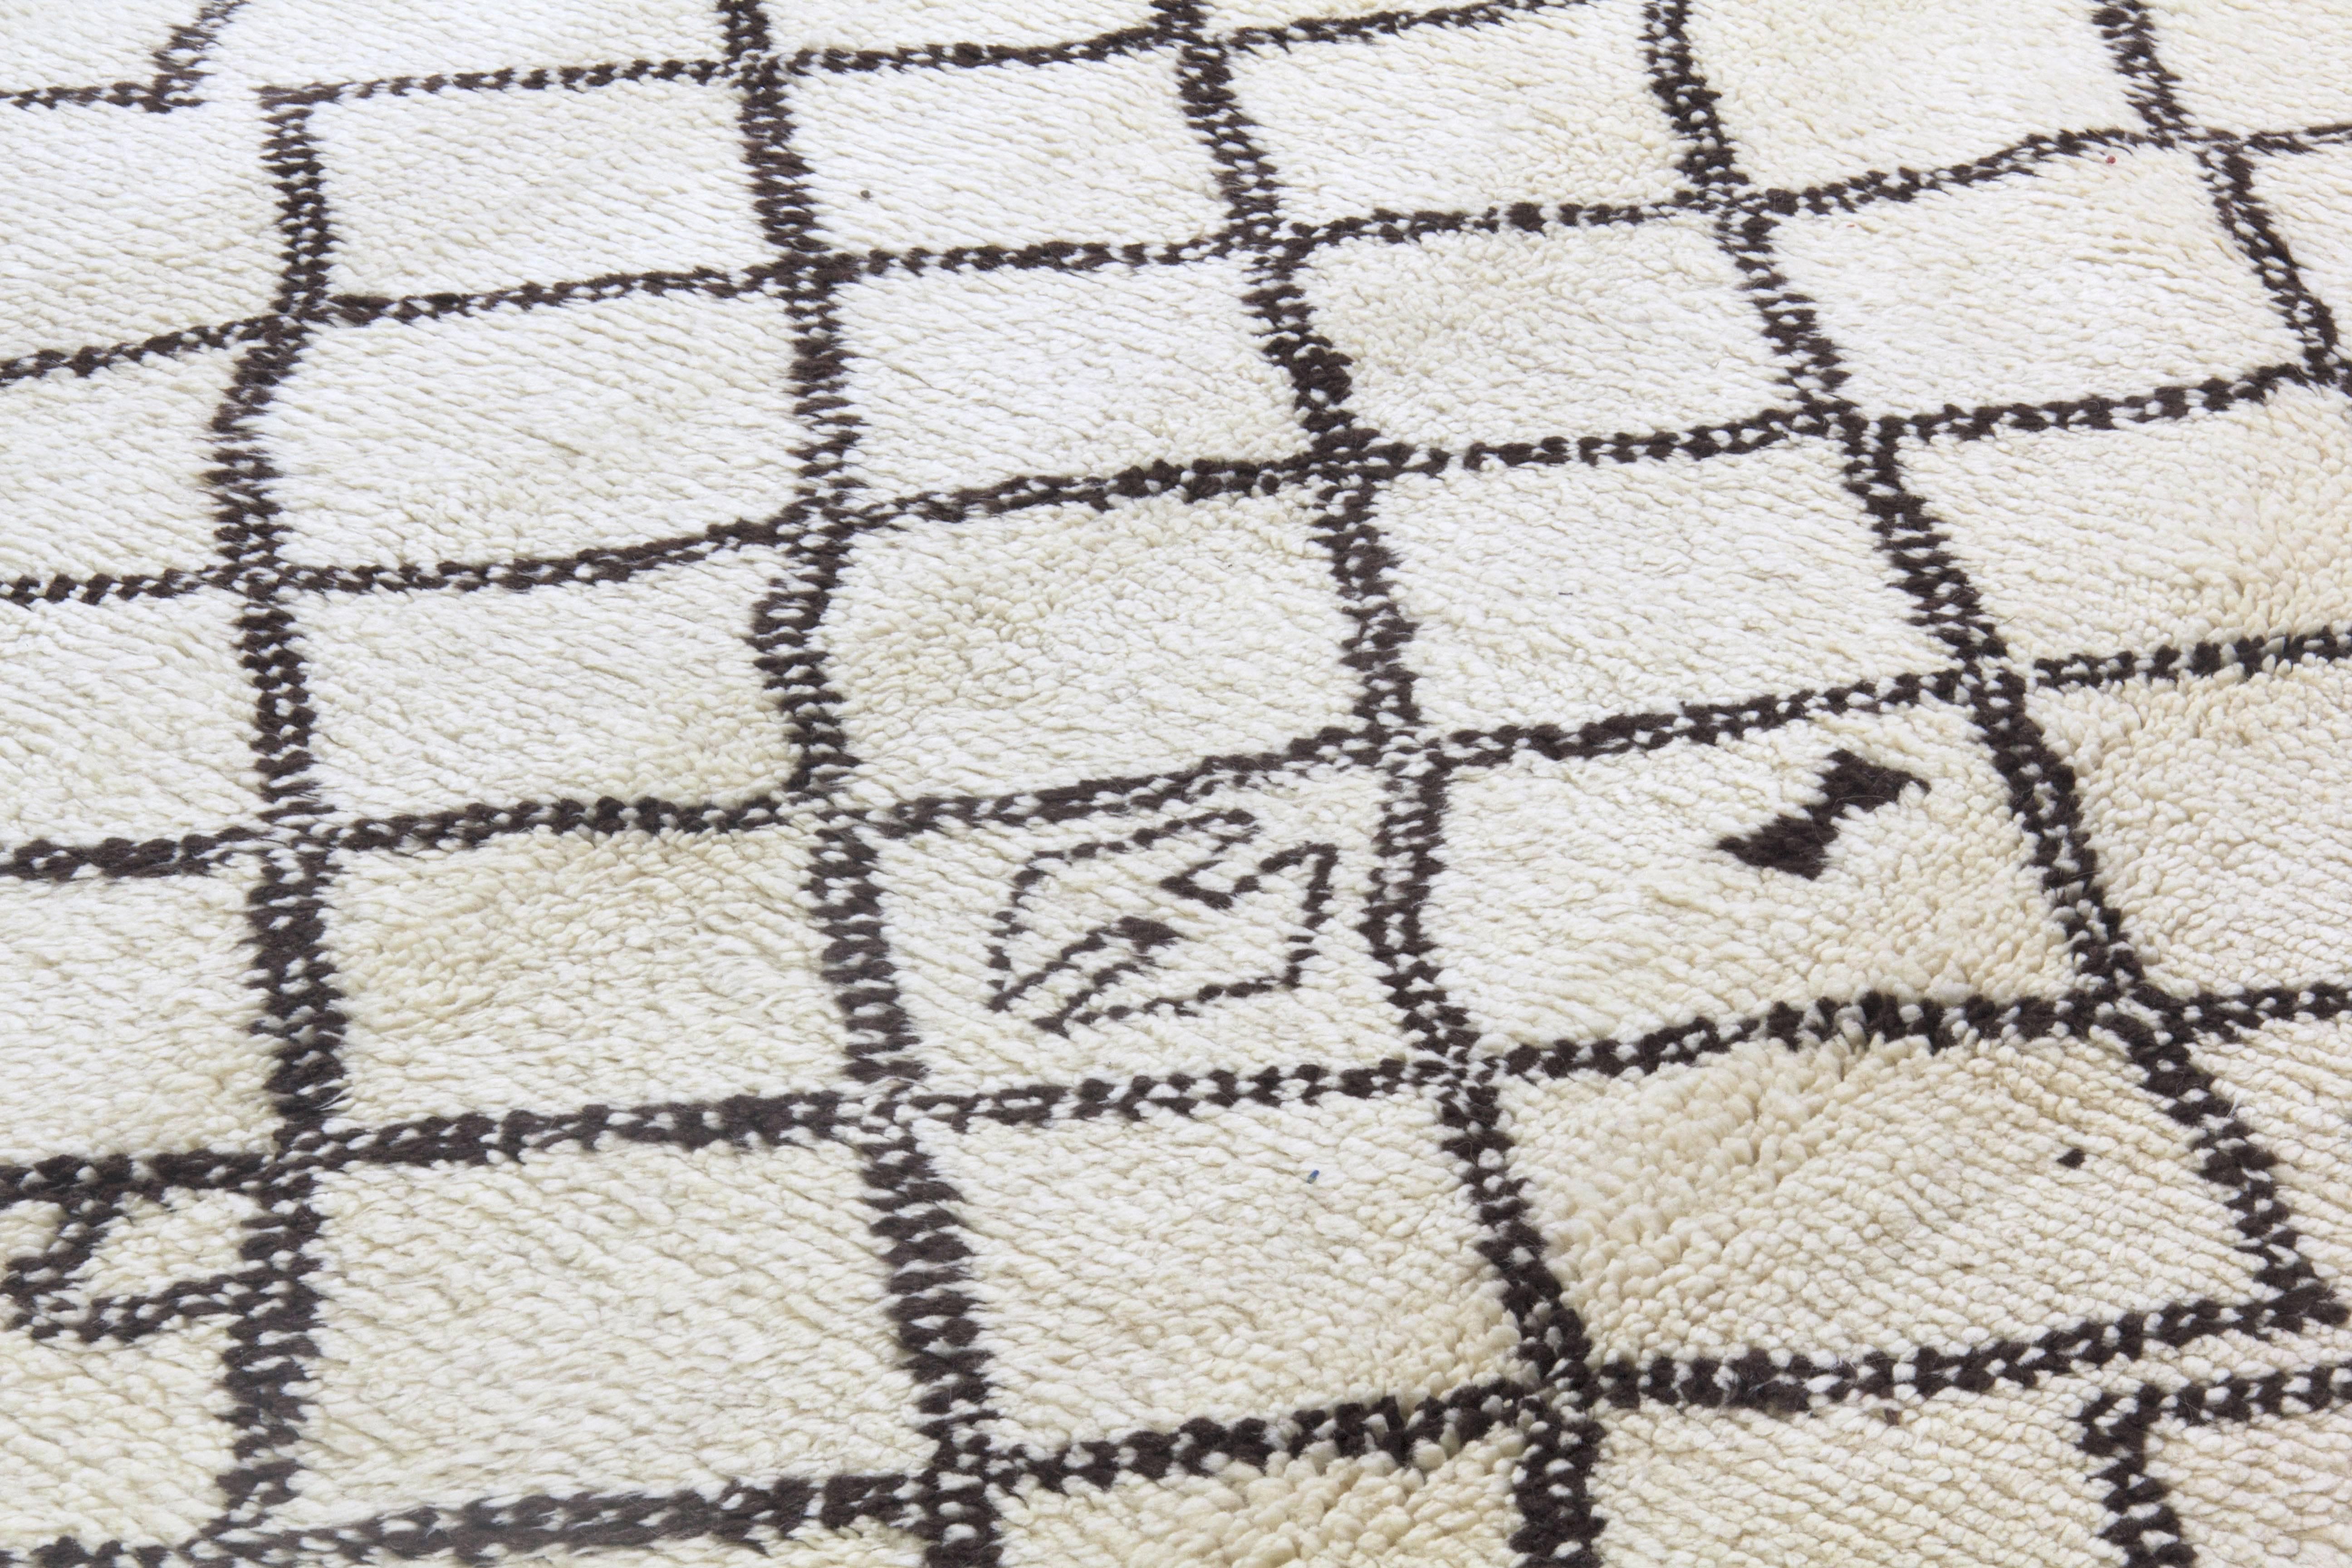 Ein neuer handgefertigter Teppich aus natürlicher, ungefärbter elfenbein-/cremefarbener und dunkelbrauner Schafwolle.
Das Design ist von alten marokkanischen Teppichen inspiriert.
Der Teppich ist wie abgebildet erhältlich oder kann auf Wunsch in